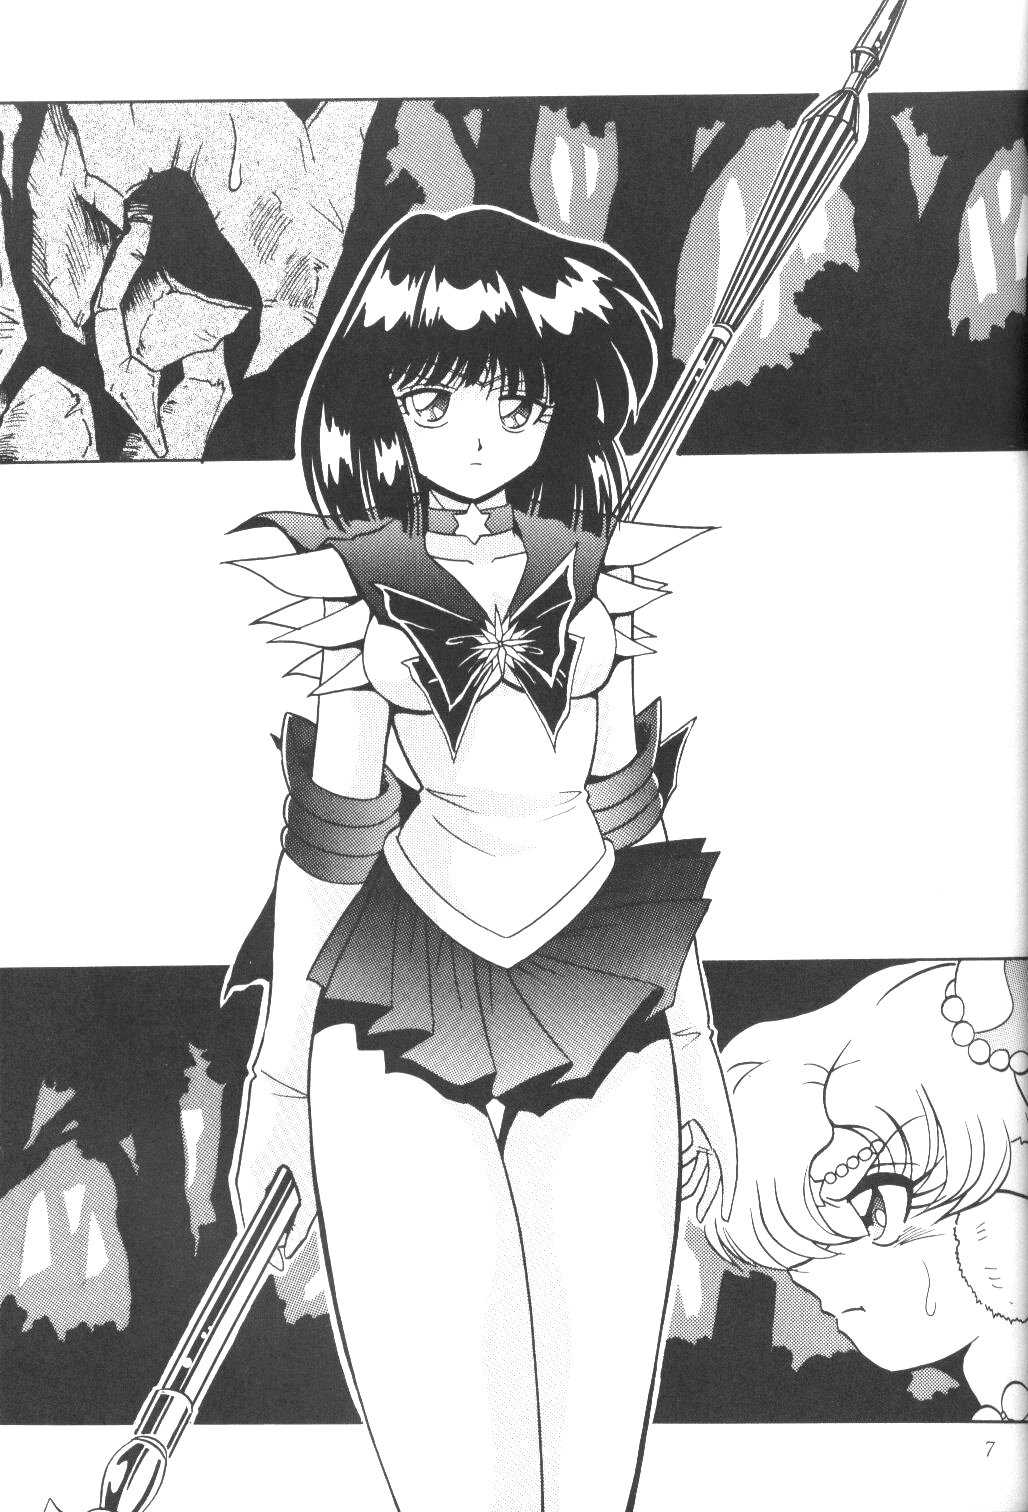 Saateiseibaazutoriito 2D Shooting - Silent Saturn SS 03 (Sailor Moon) 